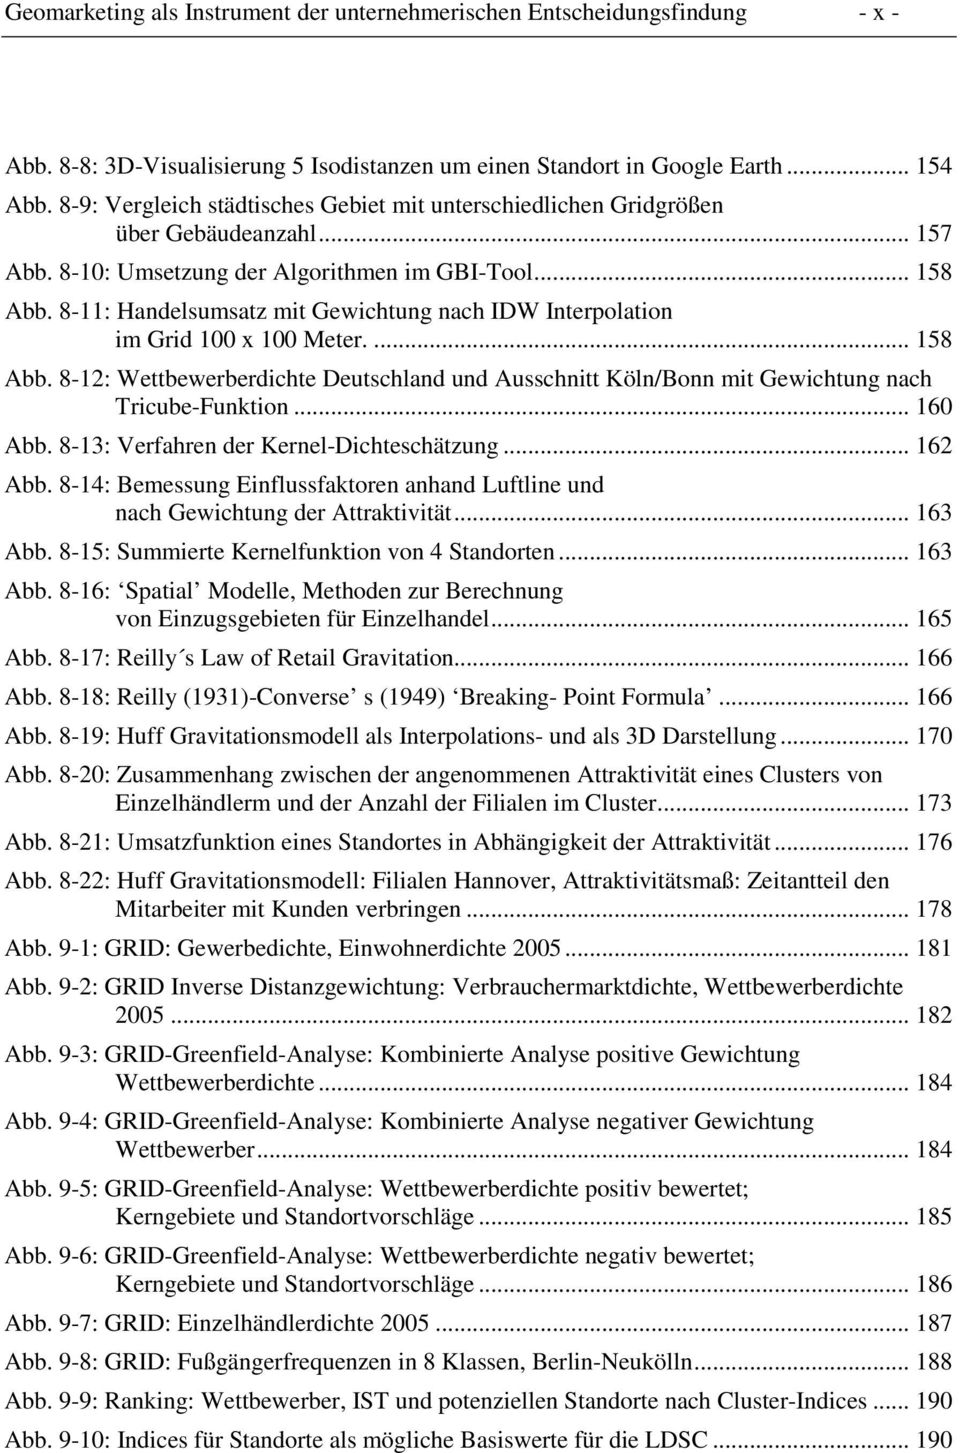 8-11: Handelsumsatz mit Gewichtung nach IDW Interpolation im Grid 100 x 100 Meter.... 158 Abb. 8-12: Wettbewerberdichte Deutschland und Ausschnitt Köln/Bonn mit Gewichtung nach Tricube-Funktion.